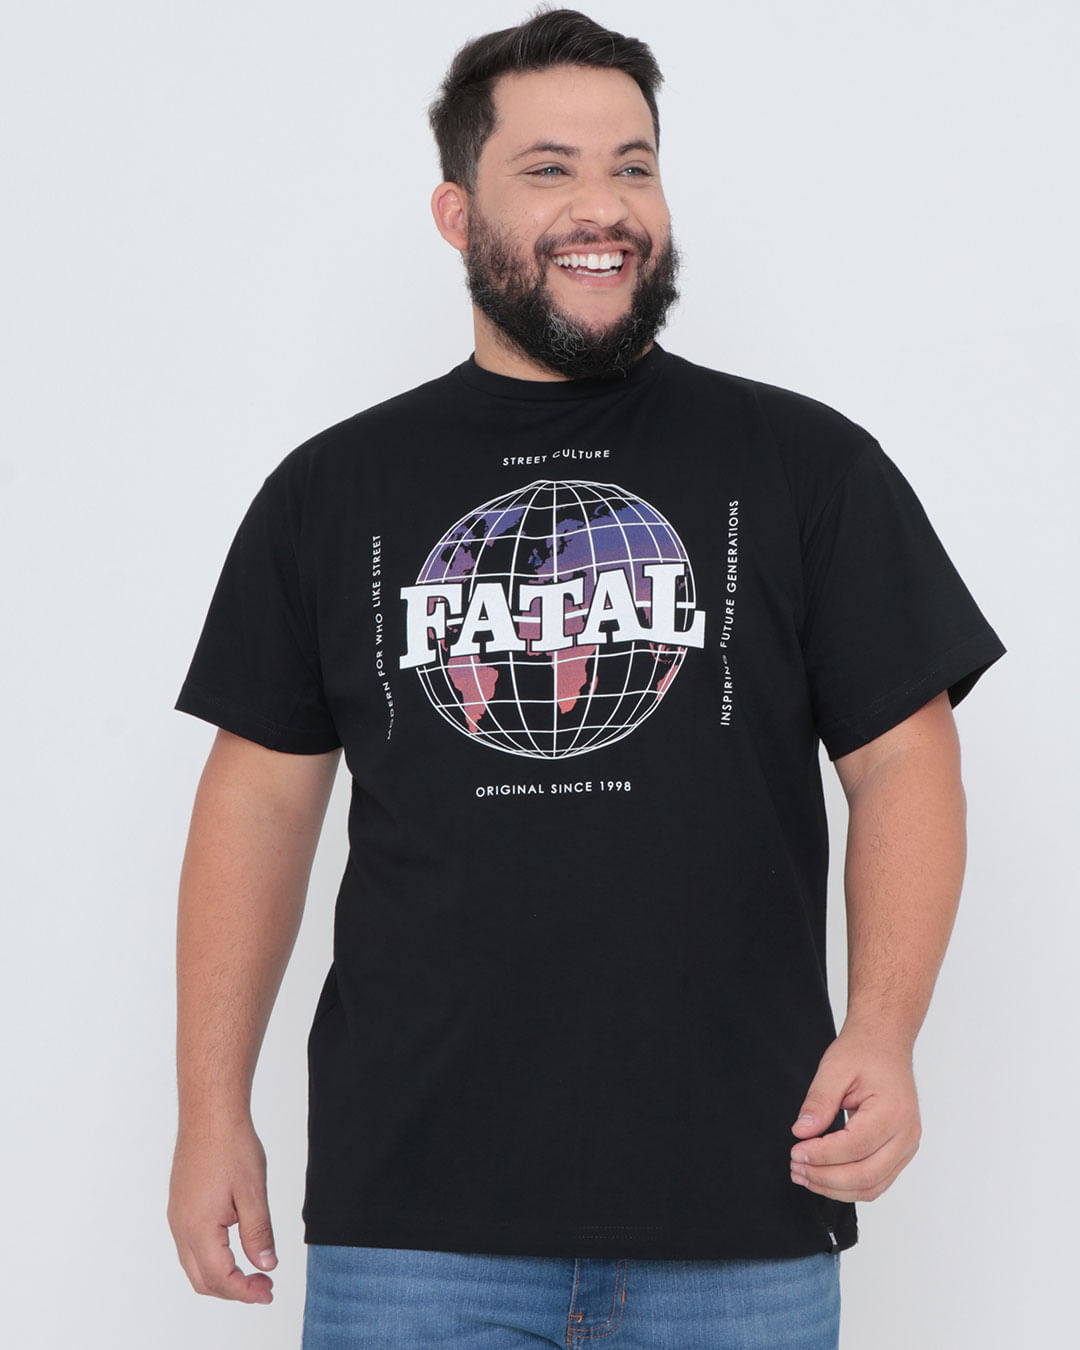 Camiseta-Plus-Size-Estampa-Fatal-Street-Culture-Preta